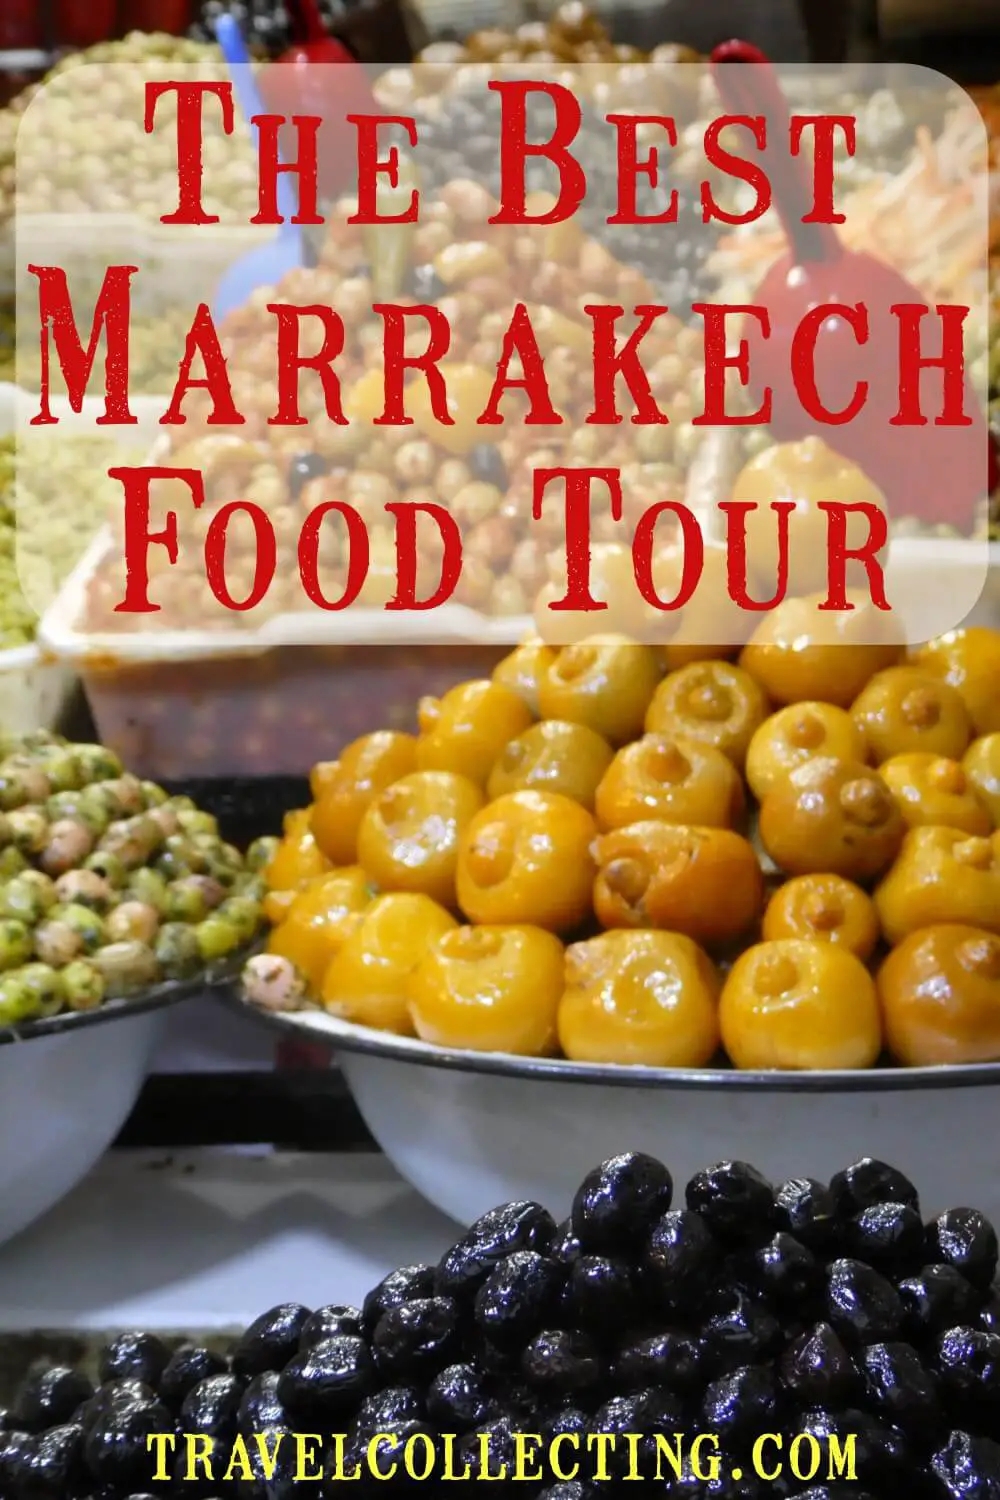 Marrakech foor tour